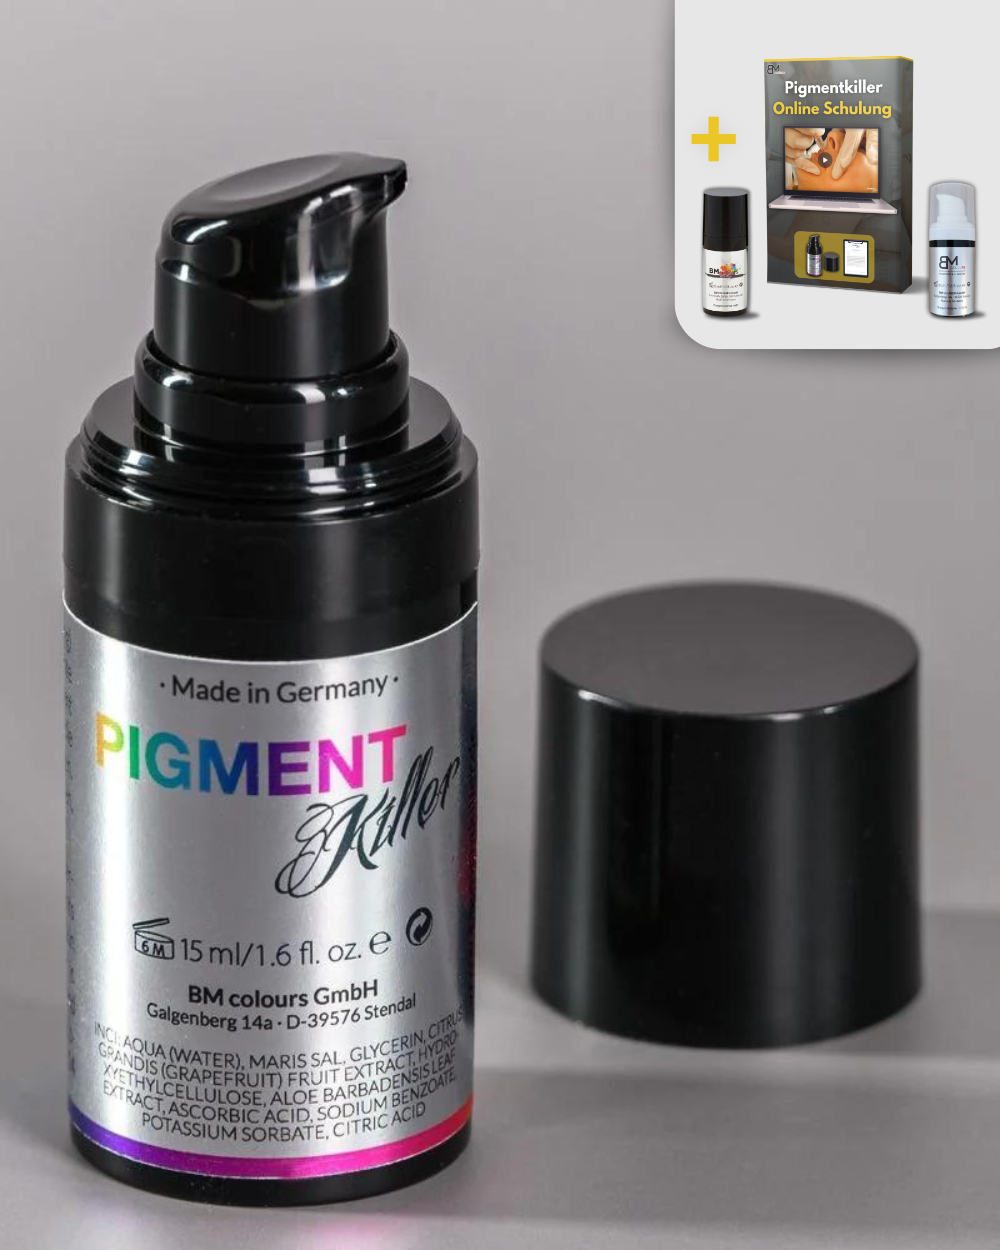 Eliminador de pigmentos de 15 ml, incluido vídeo de formación